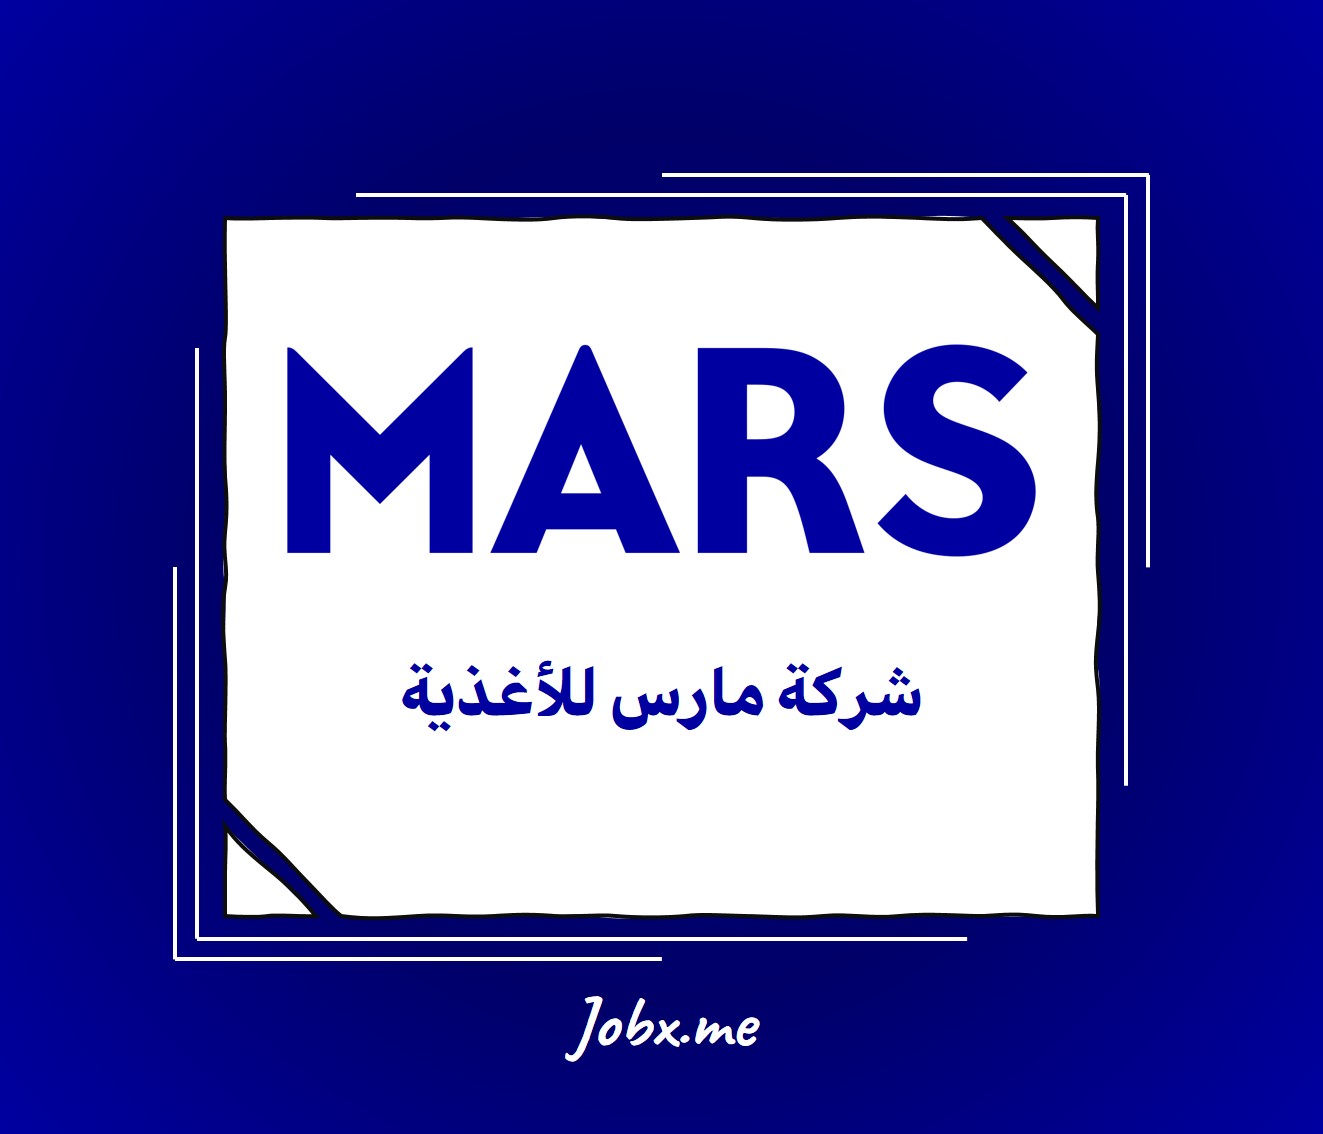 Mars Careers